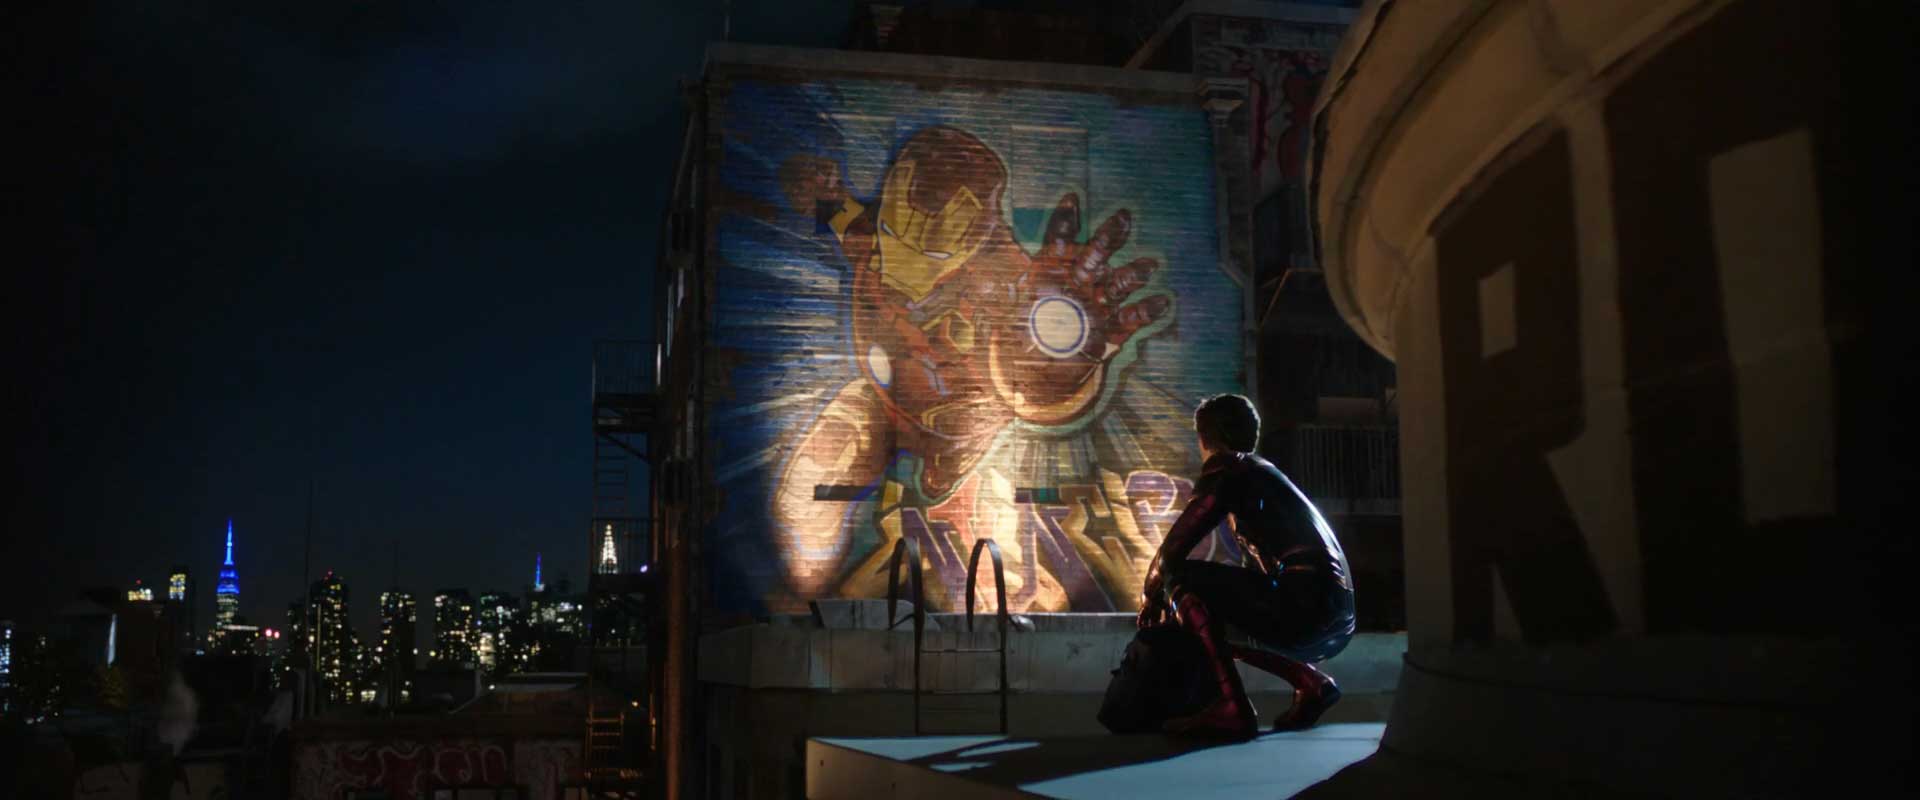 Spider-Man Far From Home Trailer 2 Breakdown - Peter Parker Misses Tony Stark